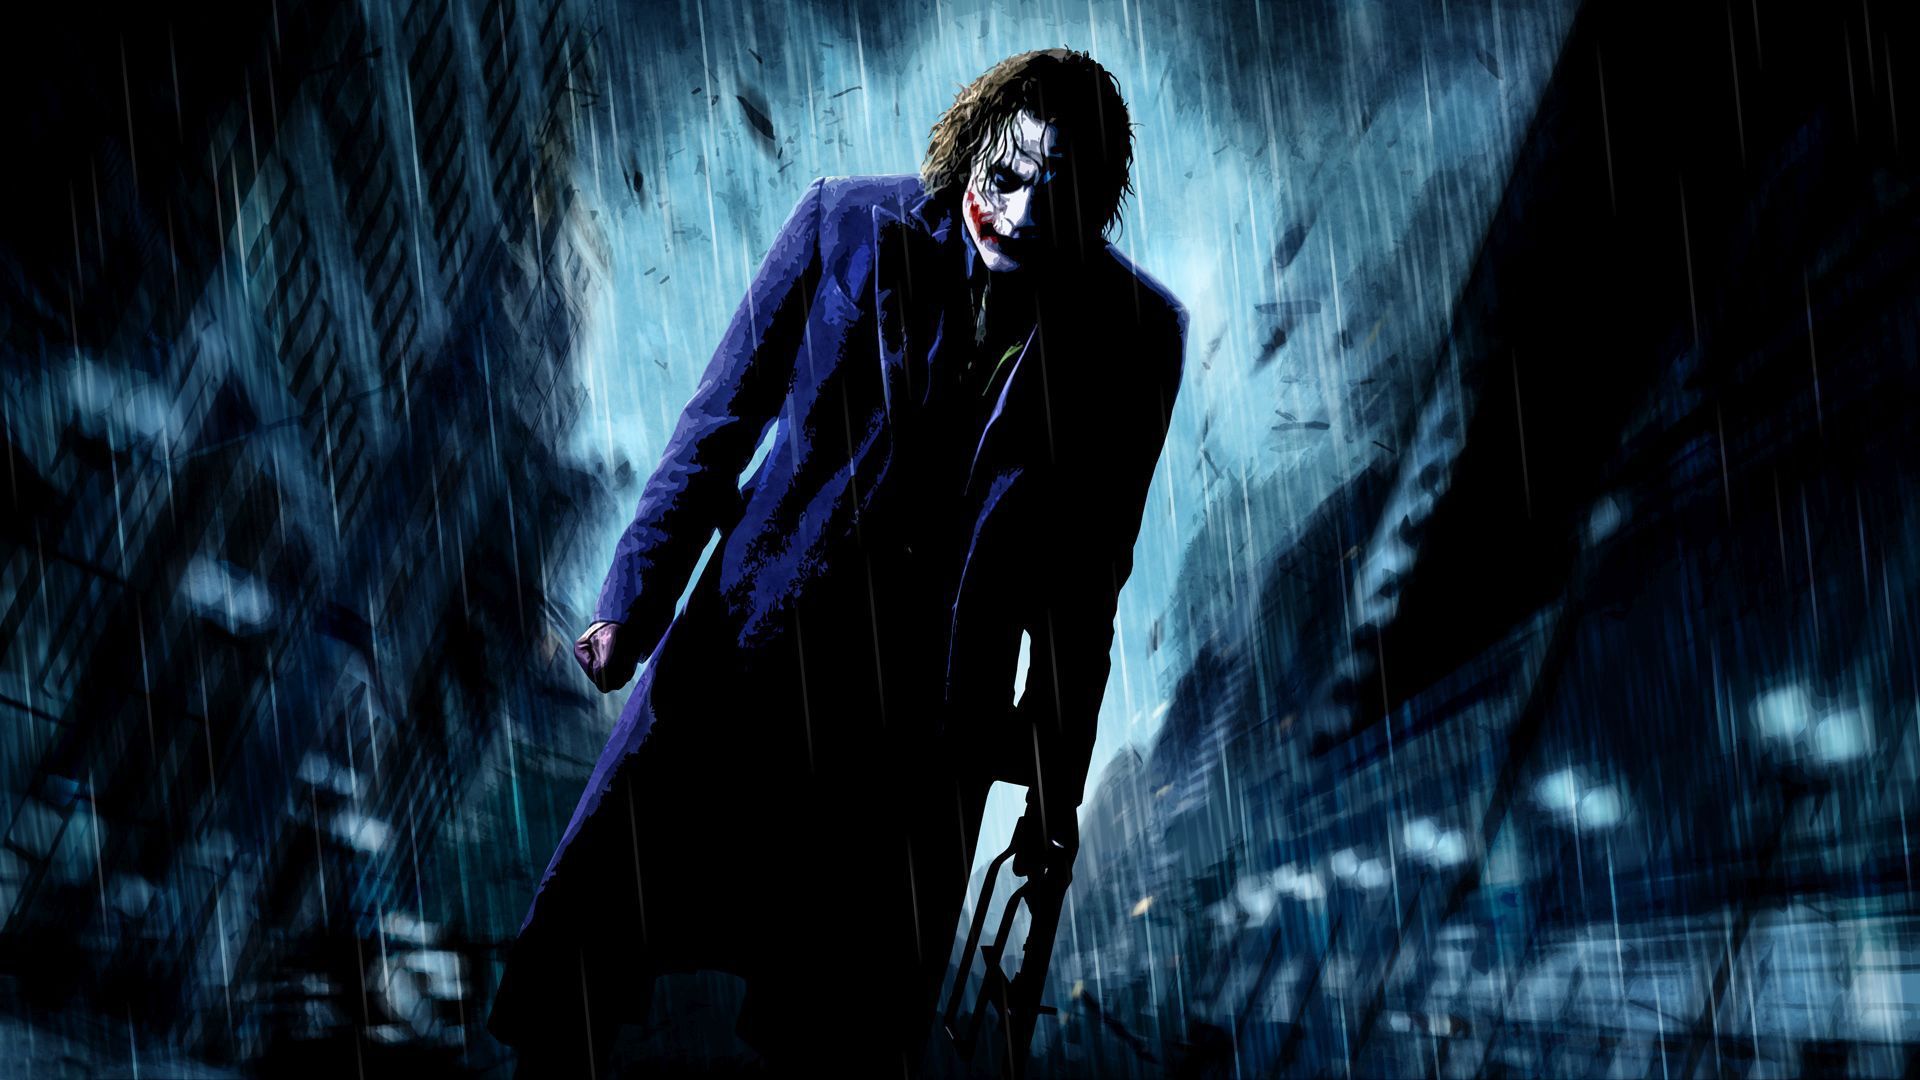 Joker Heath Ledger Why So Serious - wallpaper.